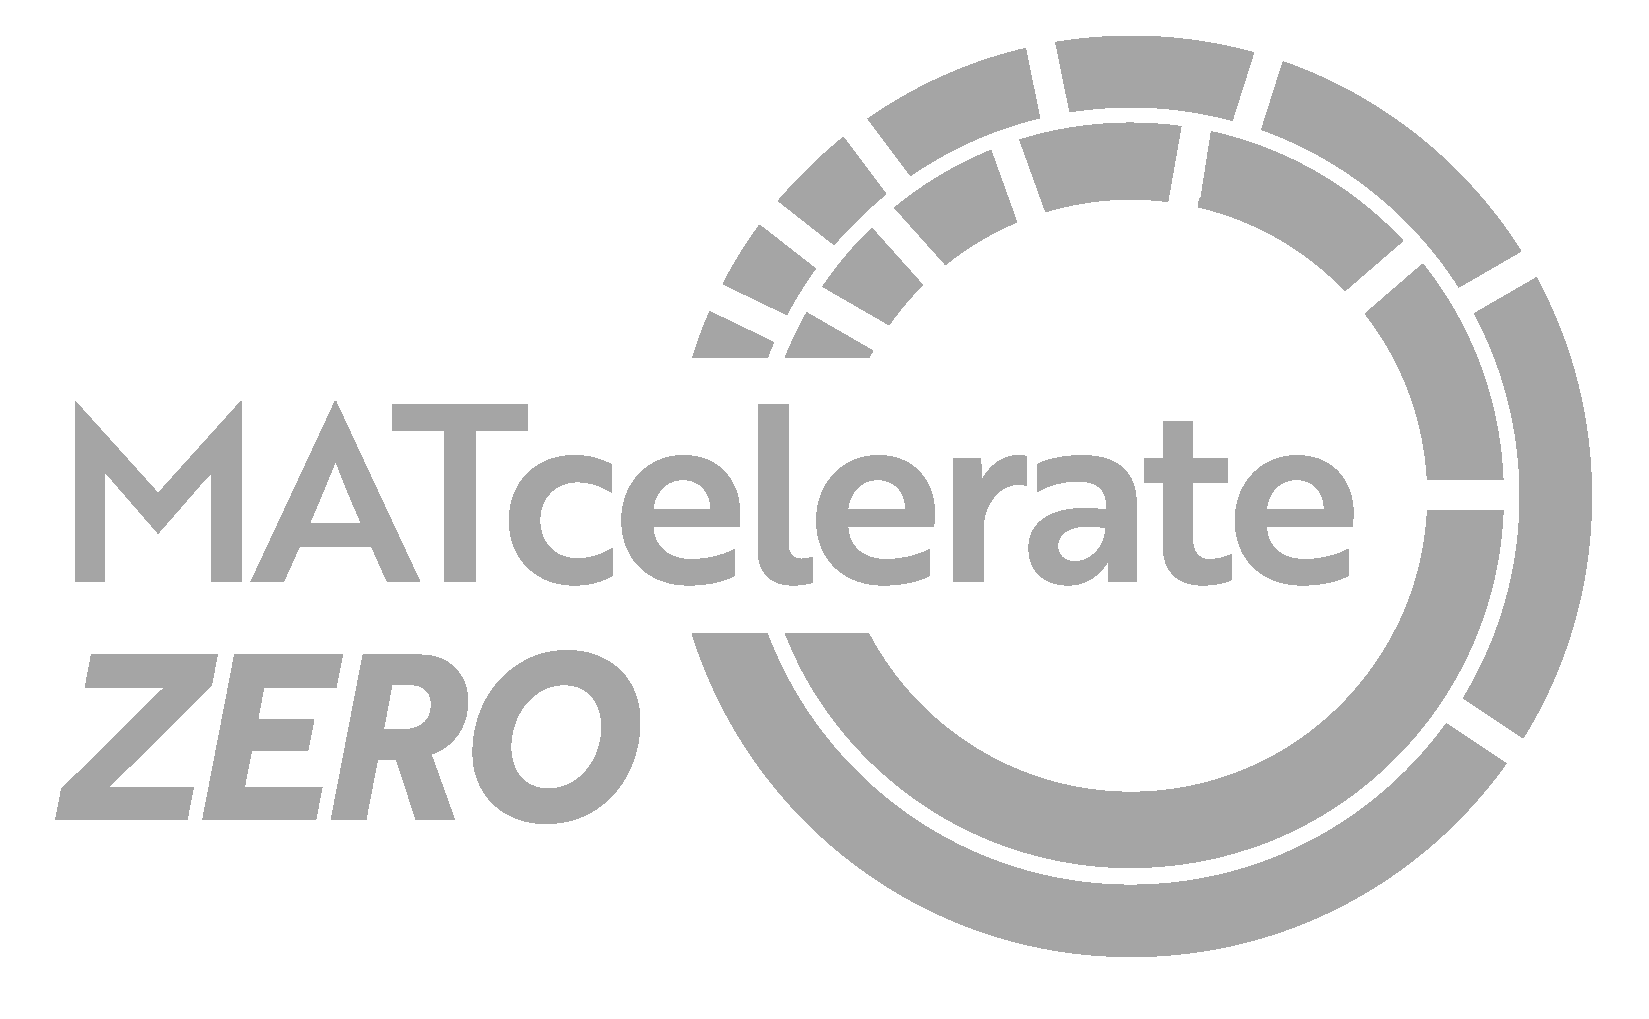 Matcelerate zero logo